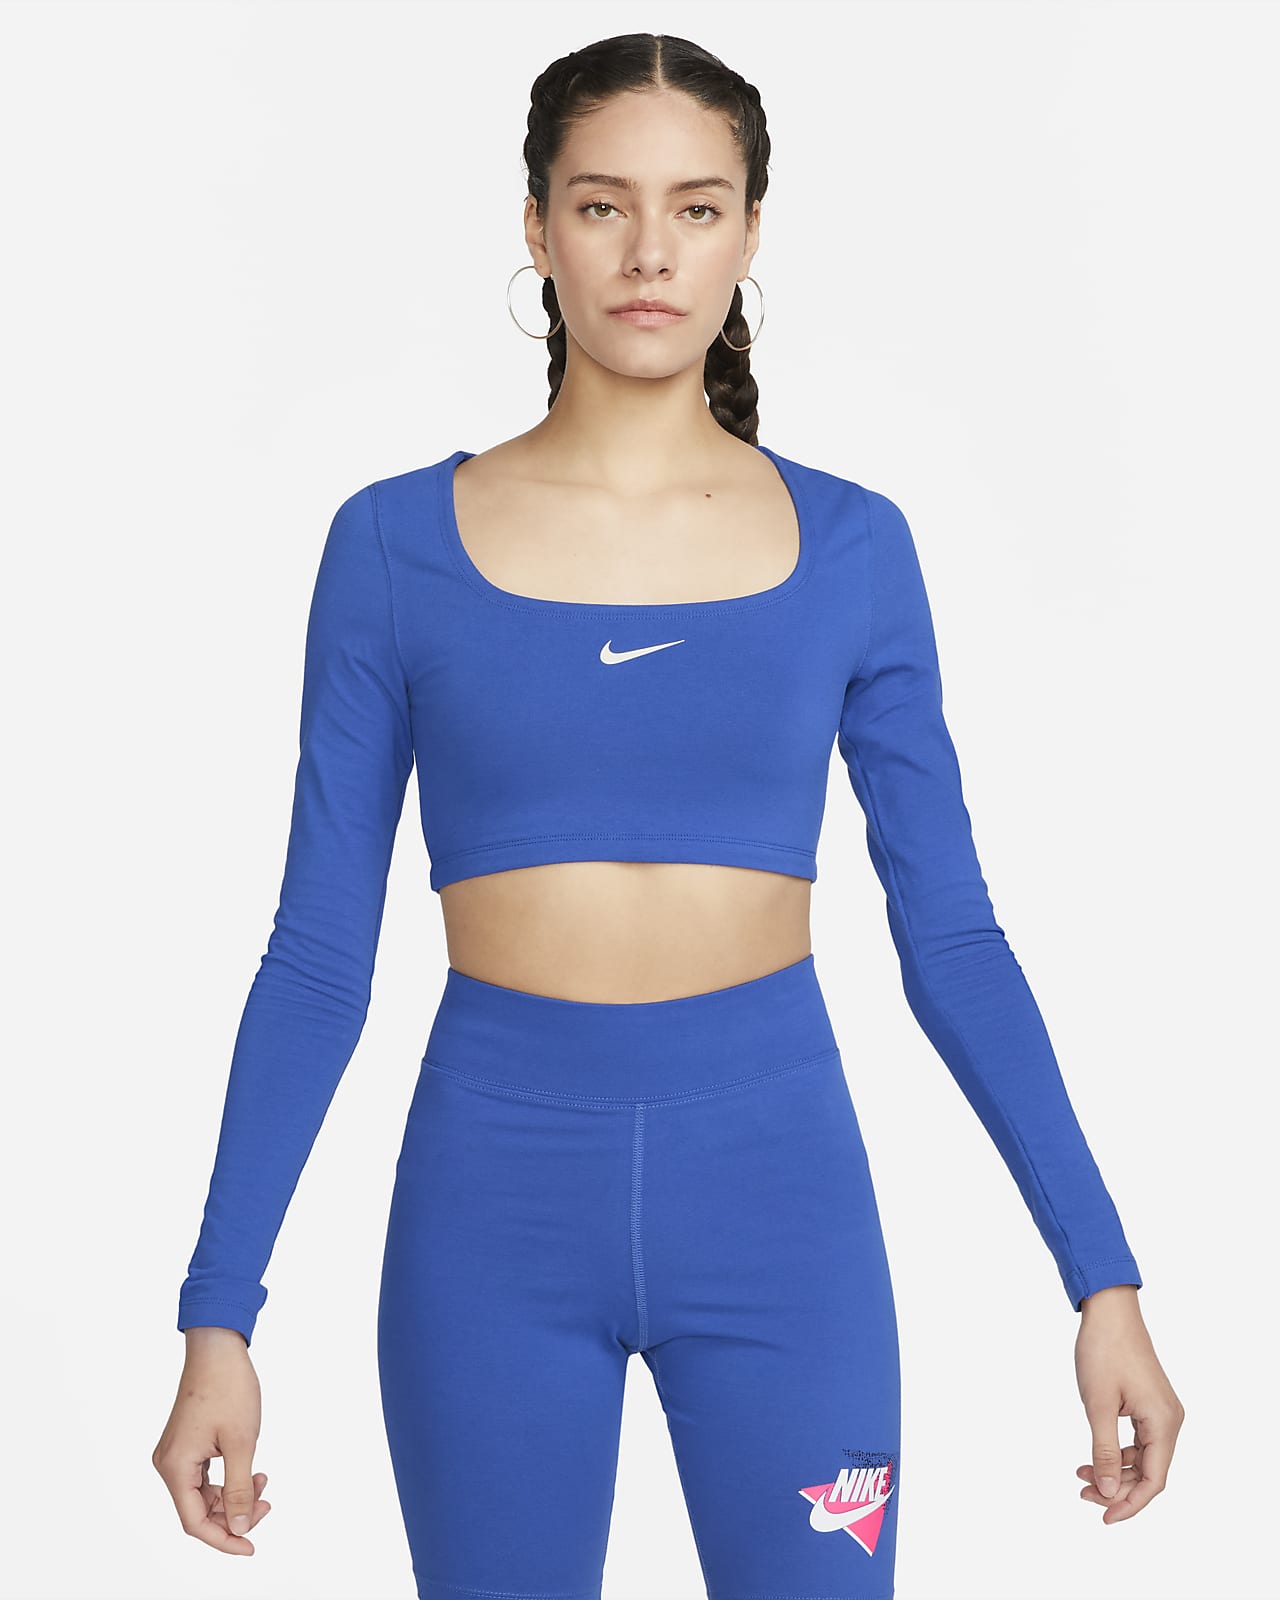 Nike Women's Crop Top. Nike.com